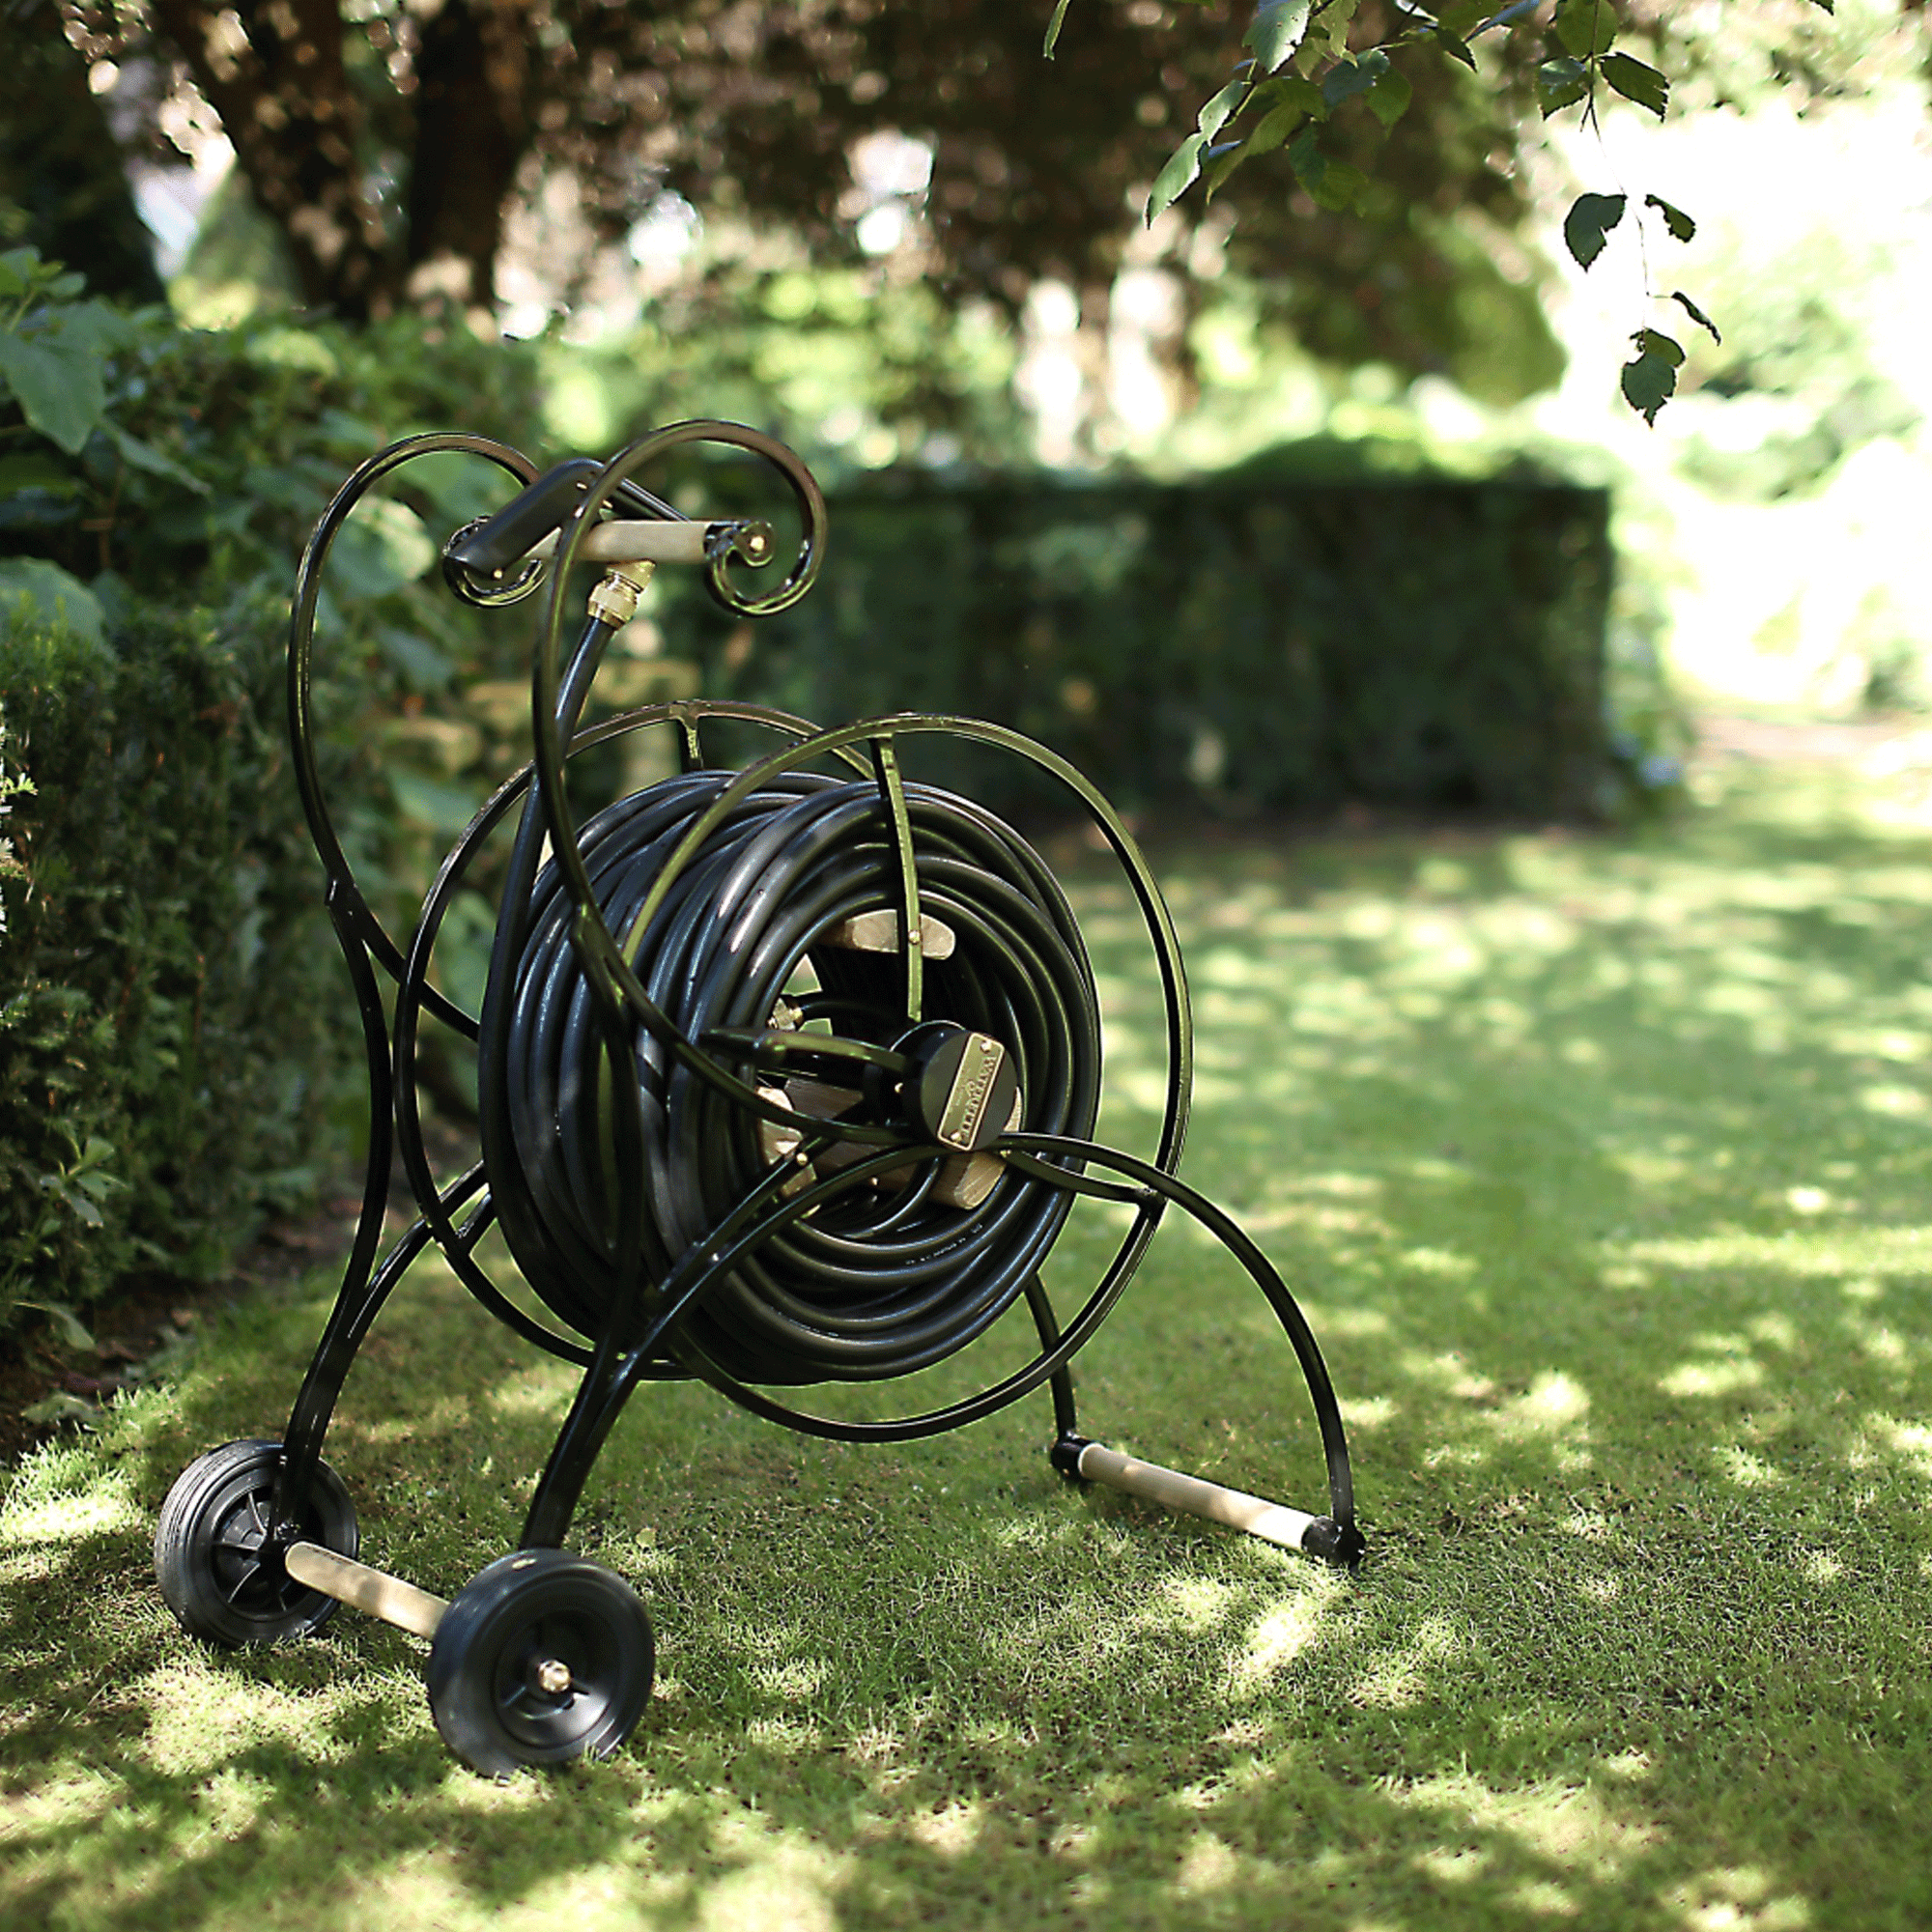 Romantischer Gartenschlauchwagen De Tuun in schwarz steht vor einer Hecke im Rasen.